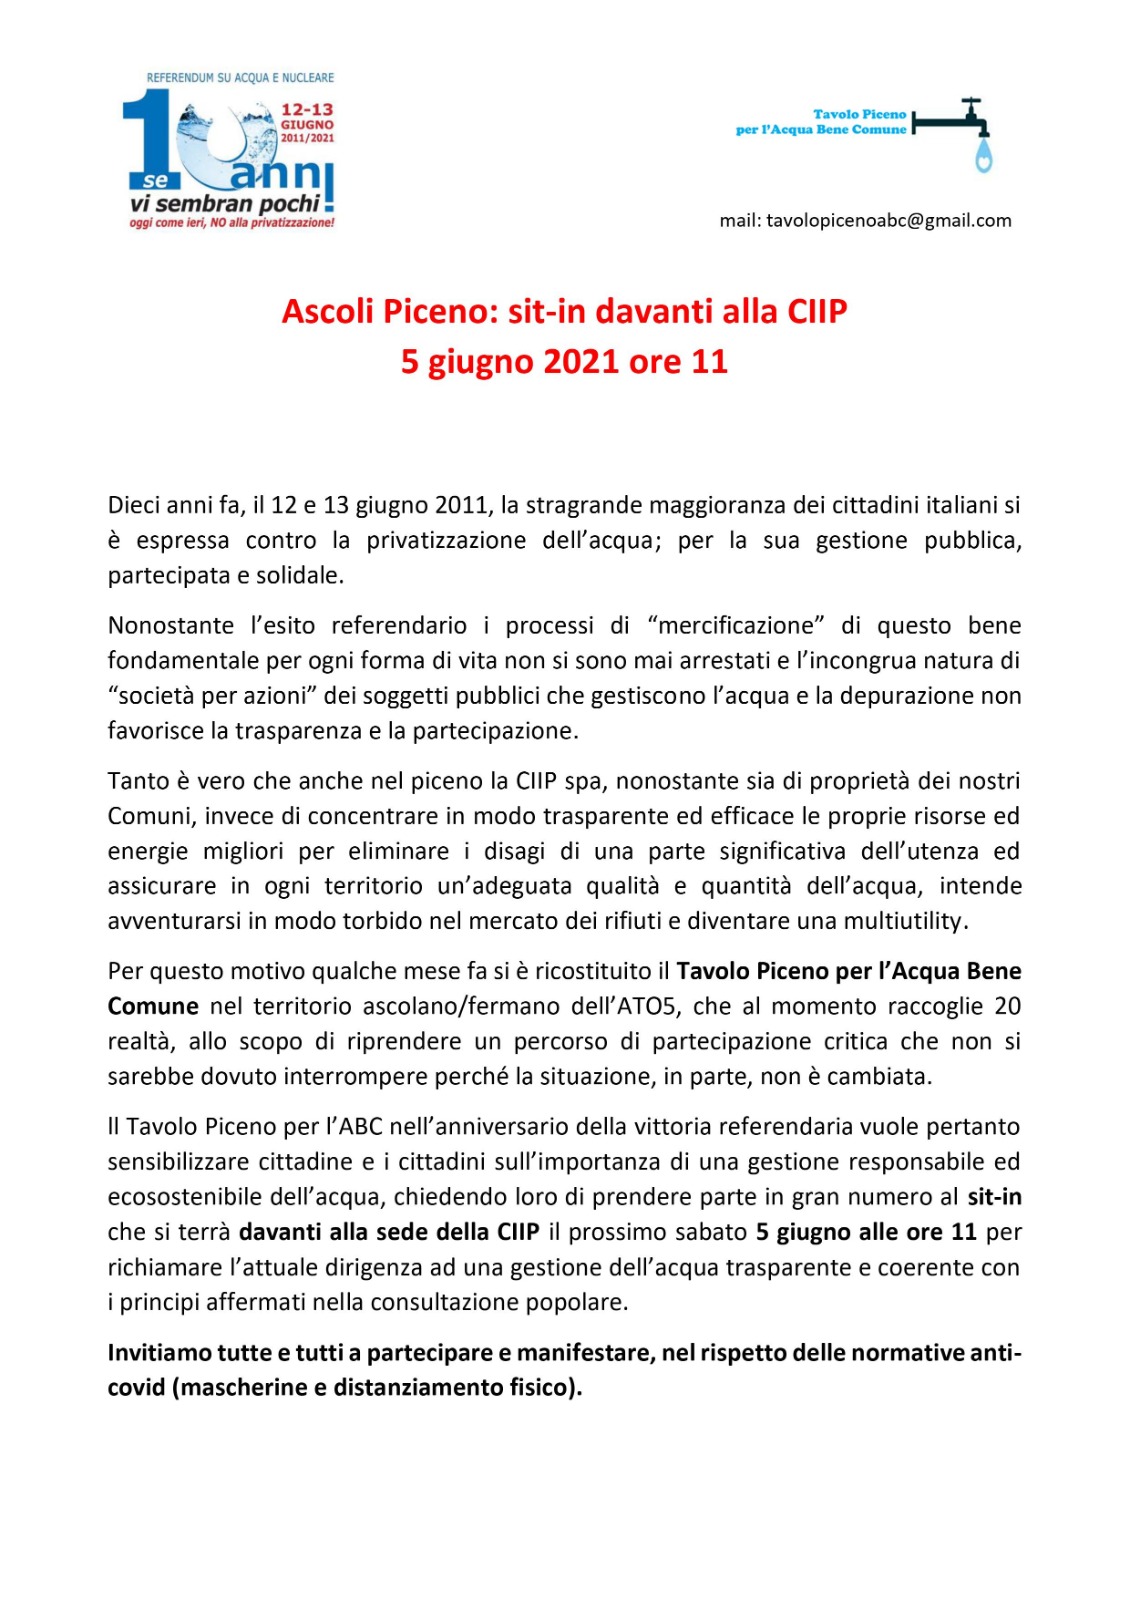 Locandina iniziativa decennale referndum Ascoli Piceno 5 6 21 1